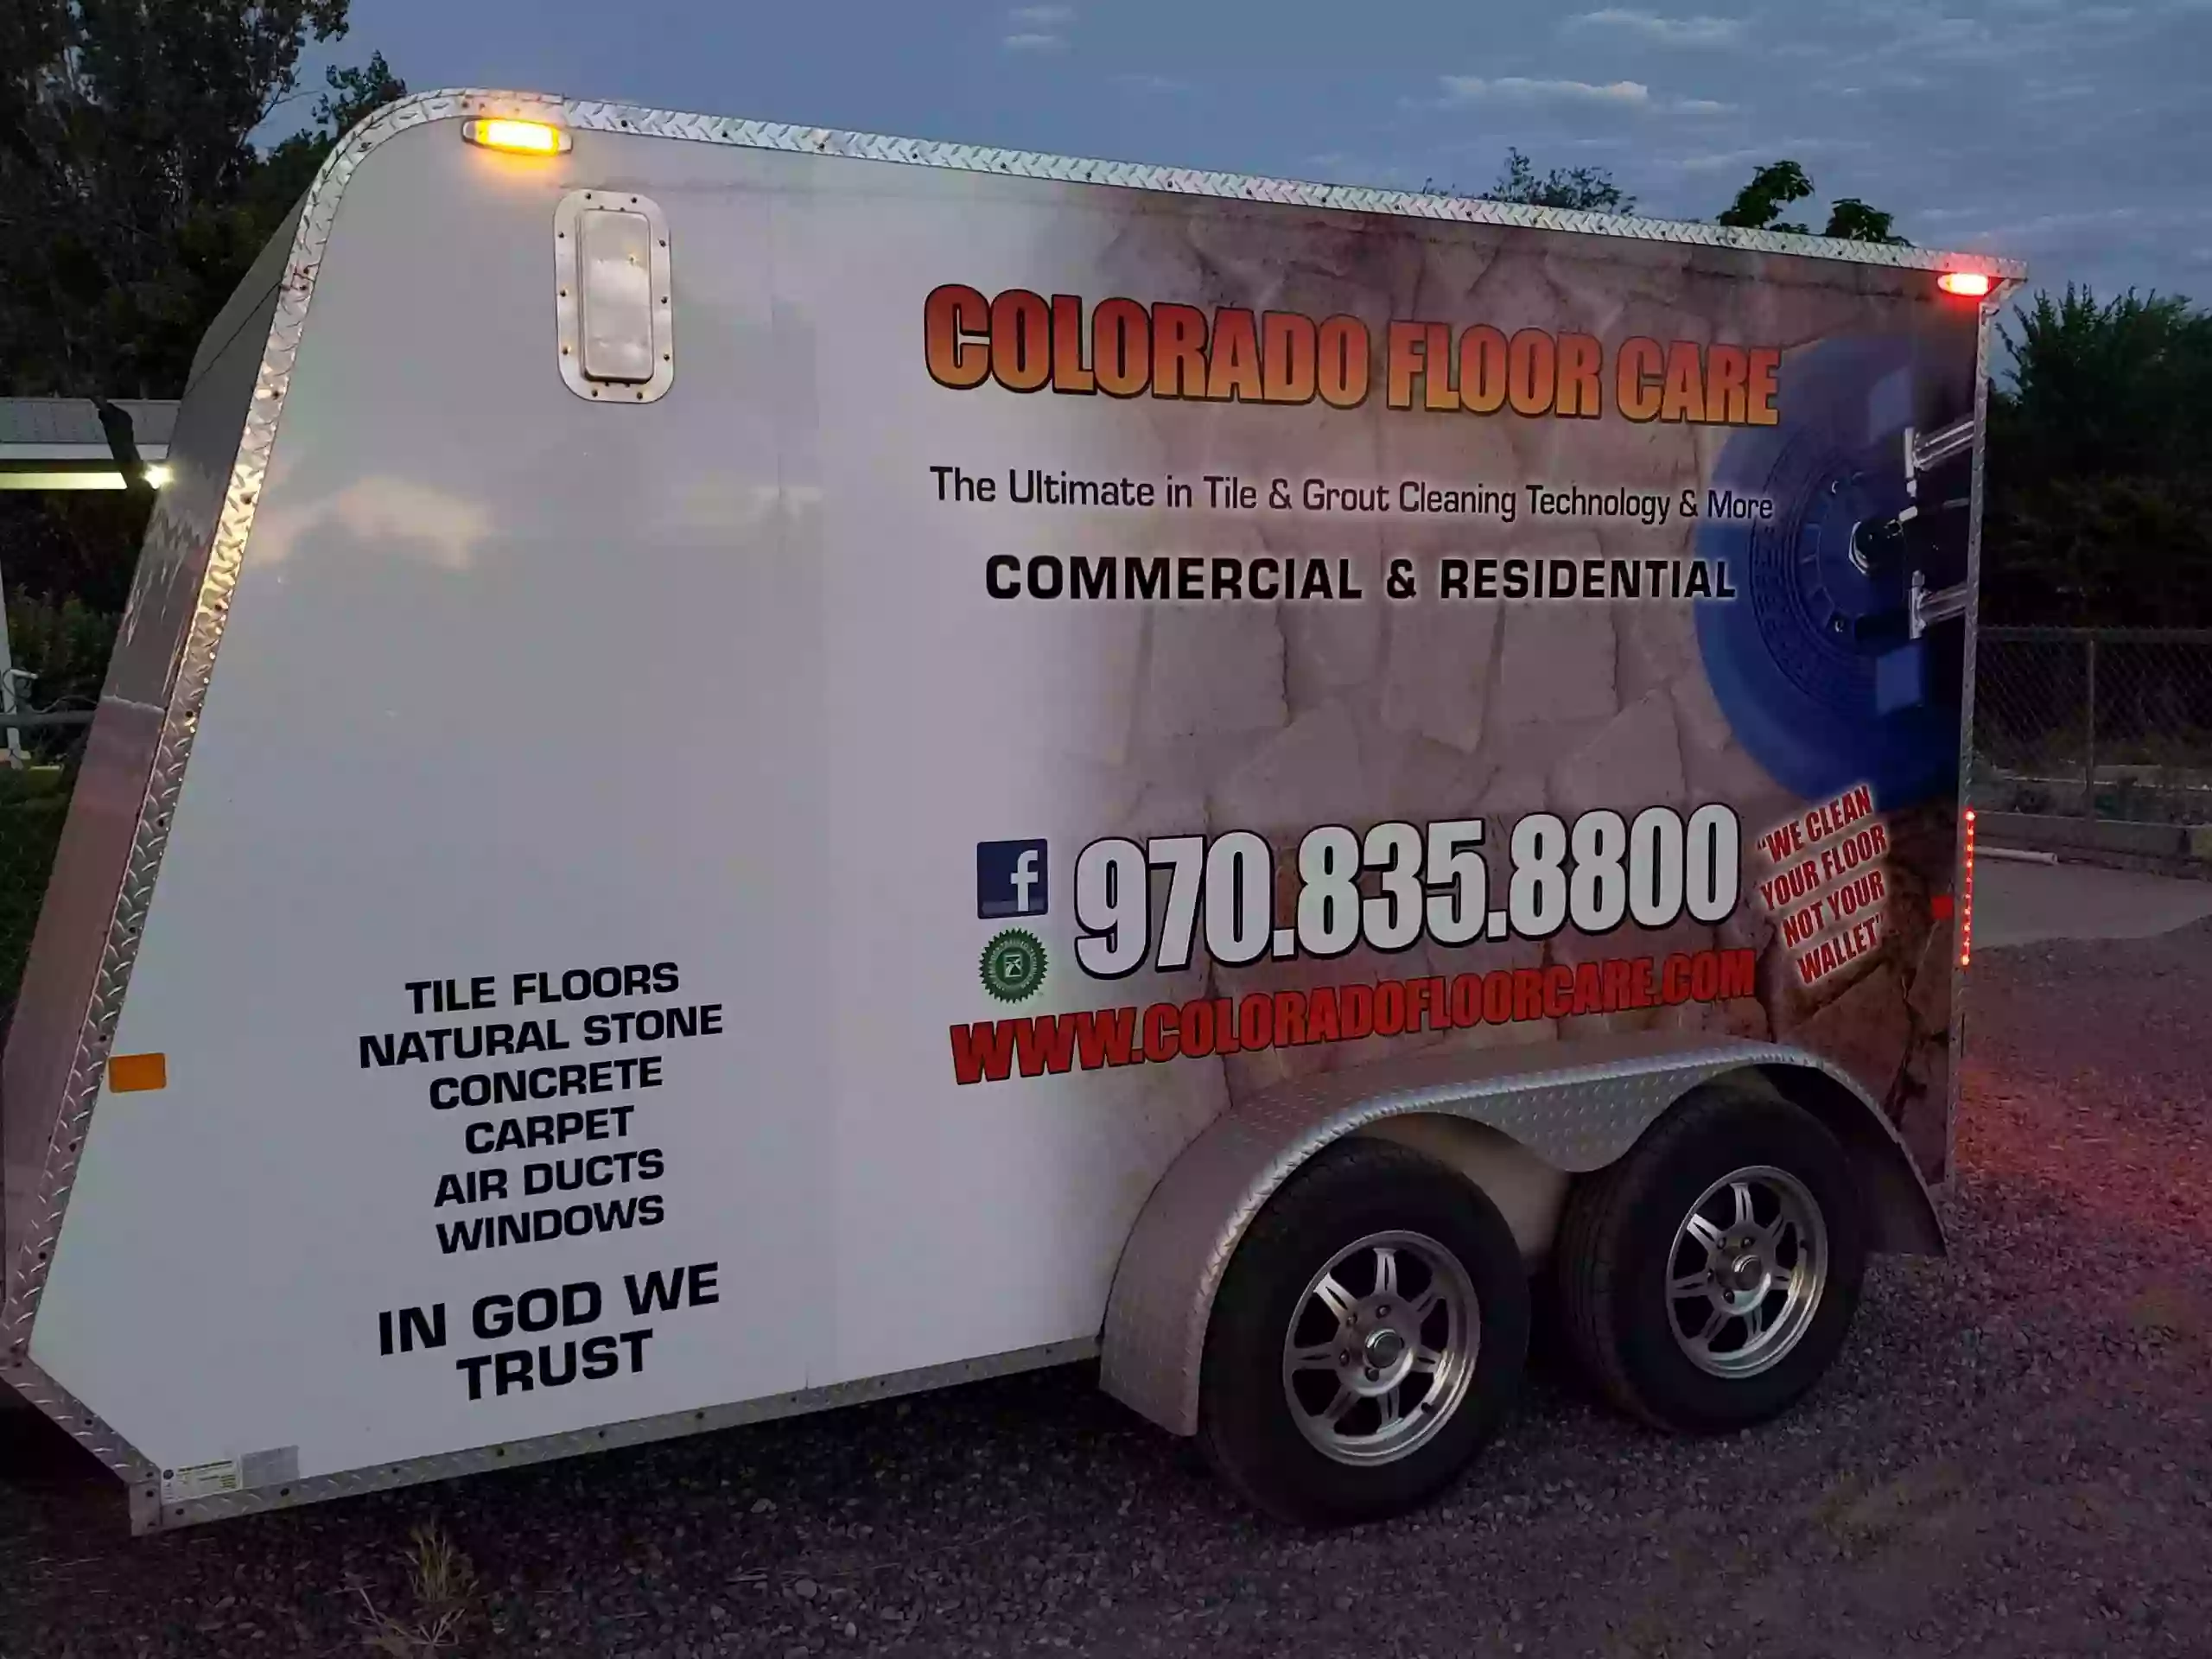 Colorado Floor Care & Services